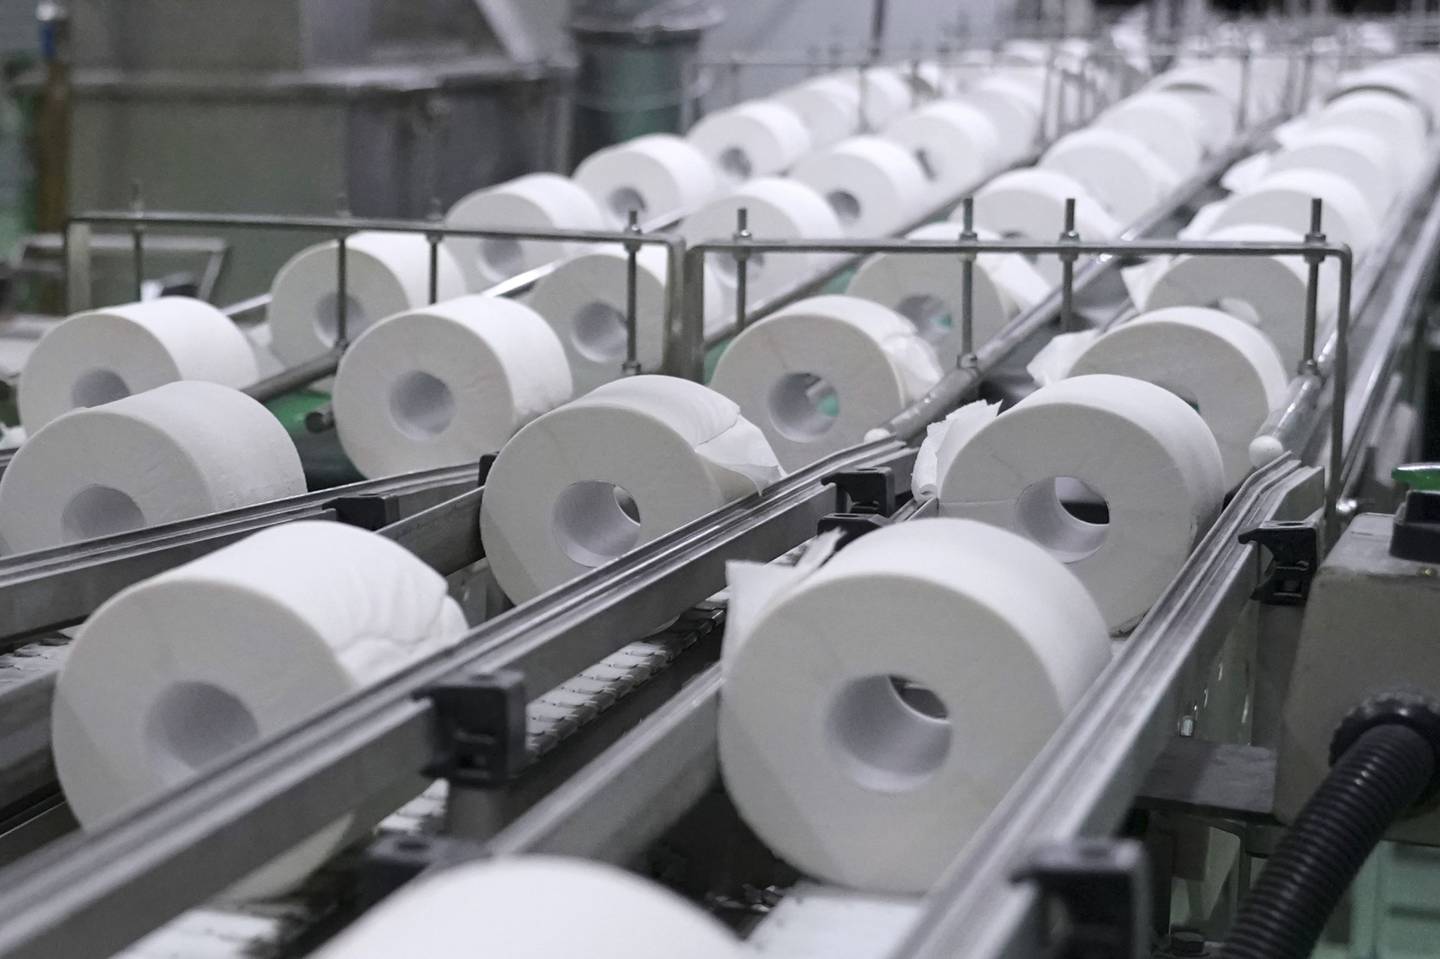 Rollos de papel higiénico se mueven a lo largo de un transportador en la línea de producción en una fábrica el martes 7 de septiembre de 2021.